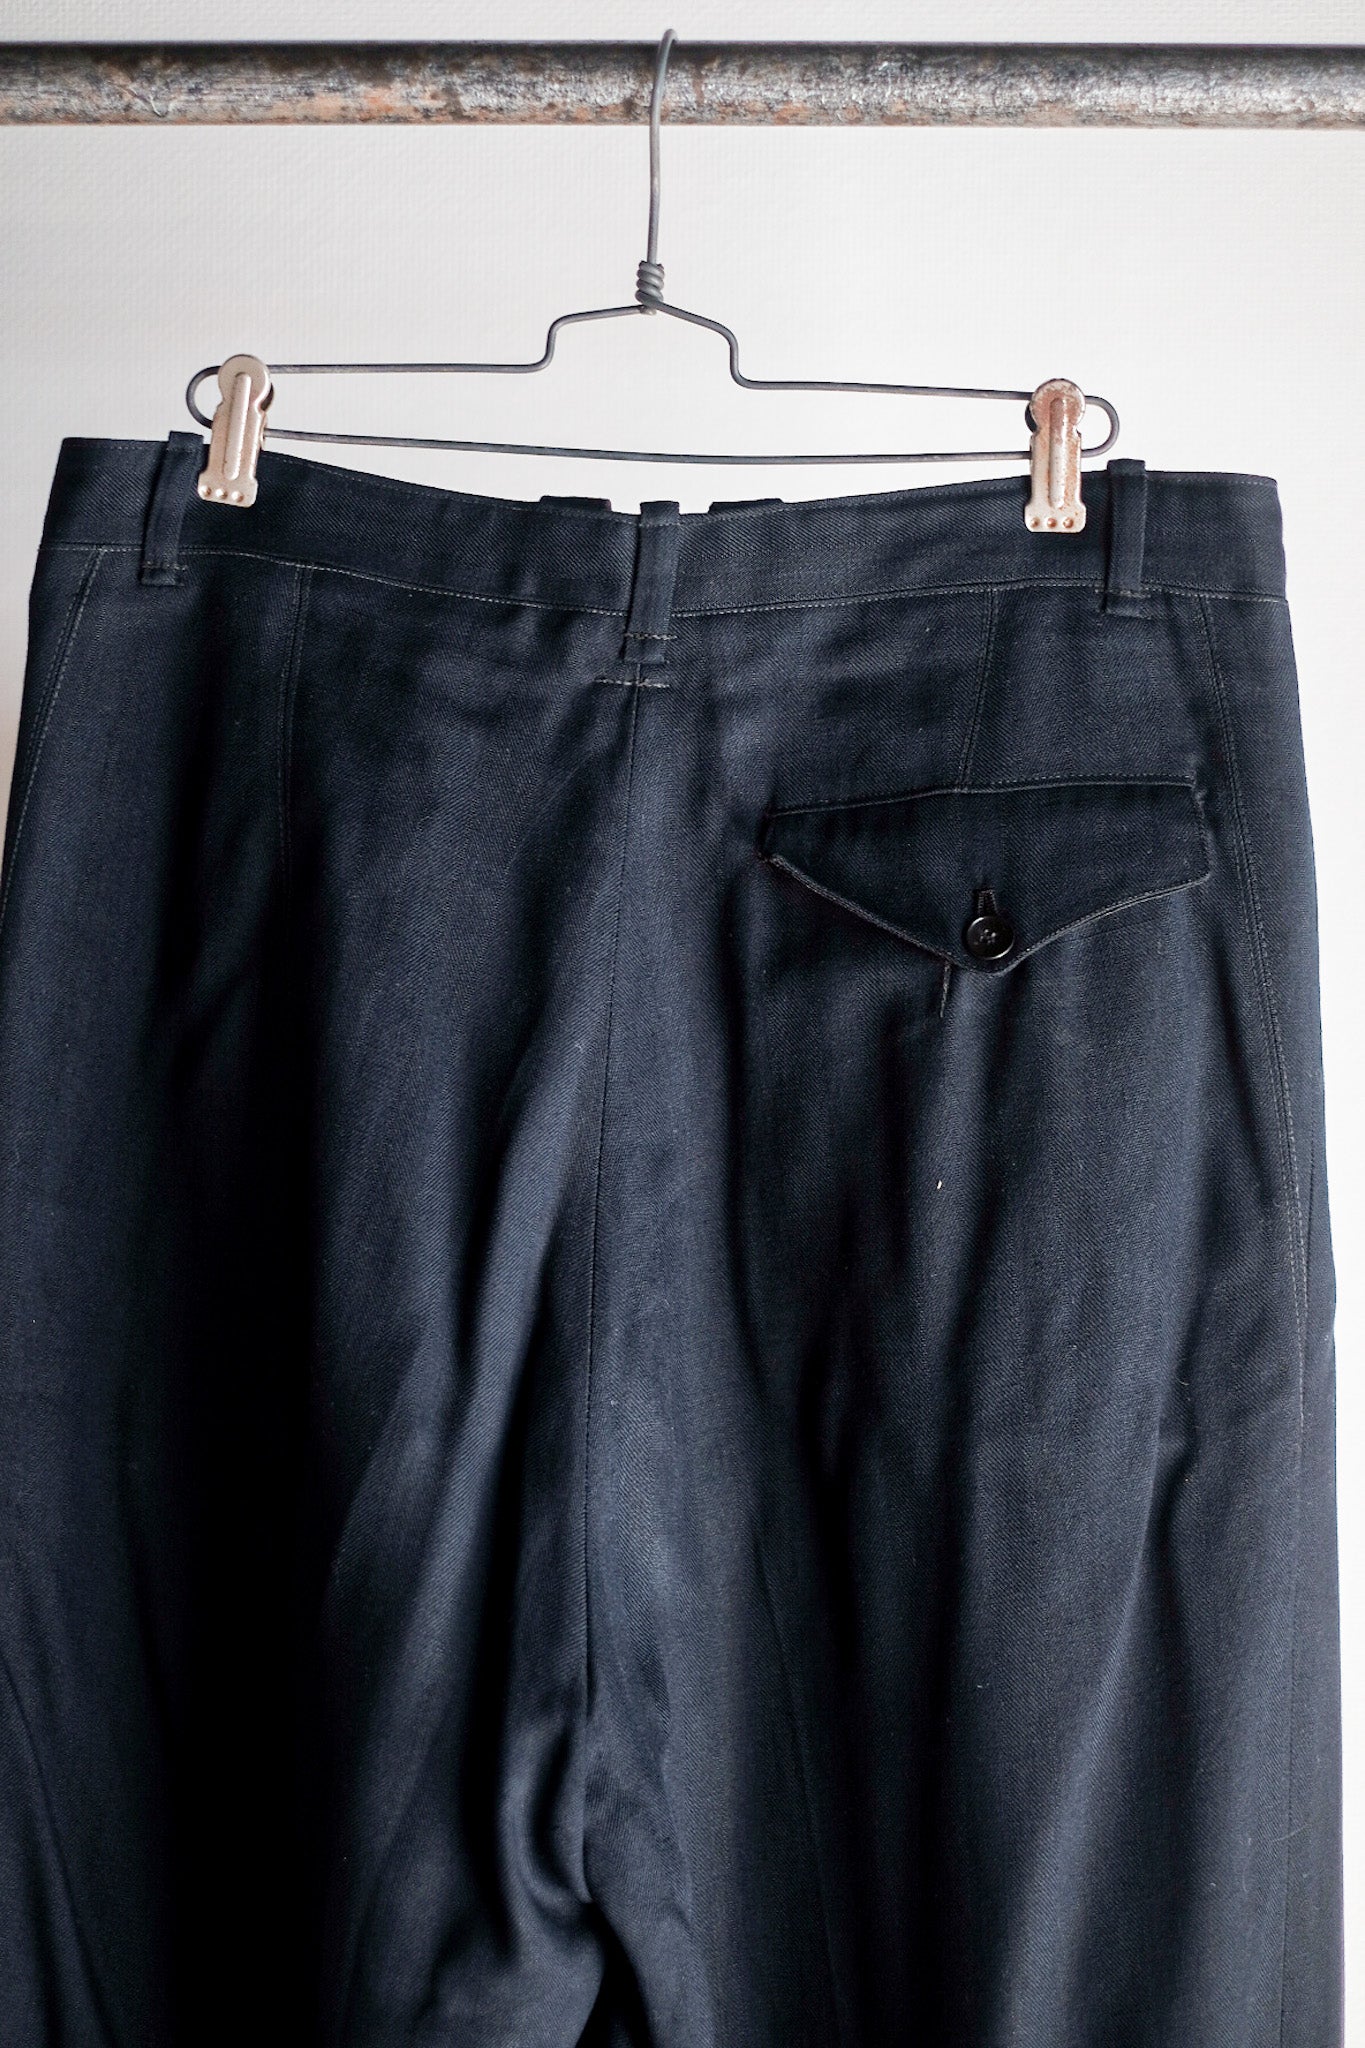 [〜40年代]德國老式人造絲羊毛褲子